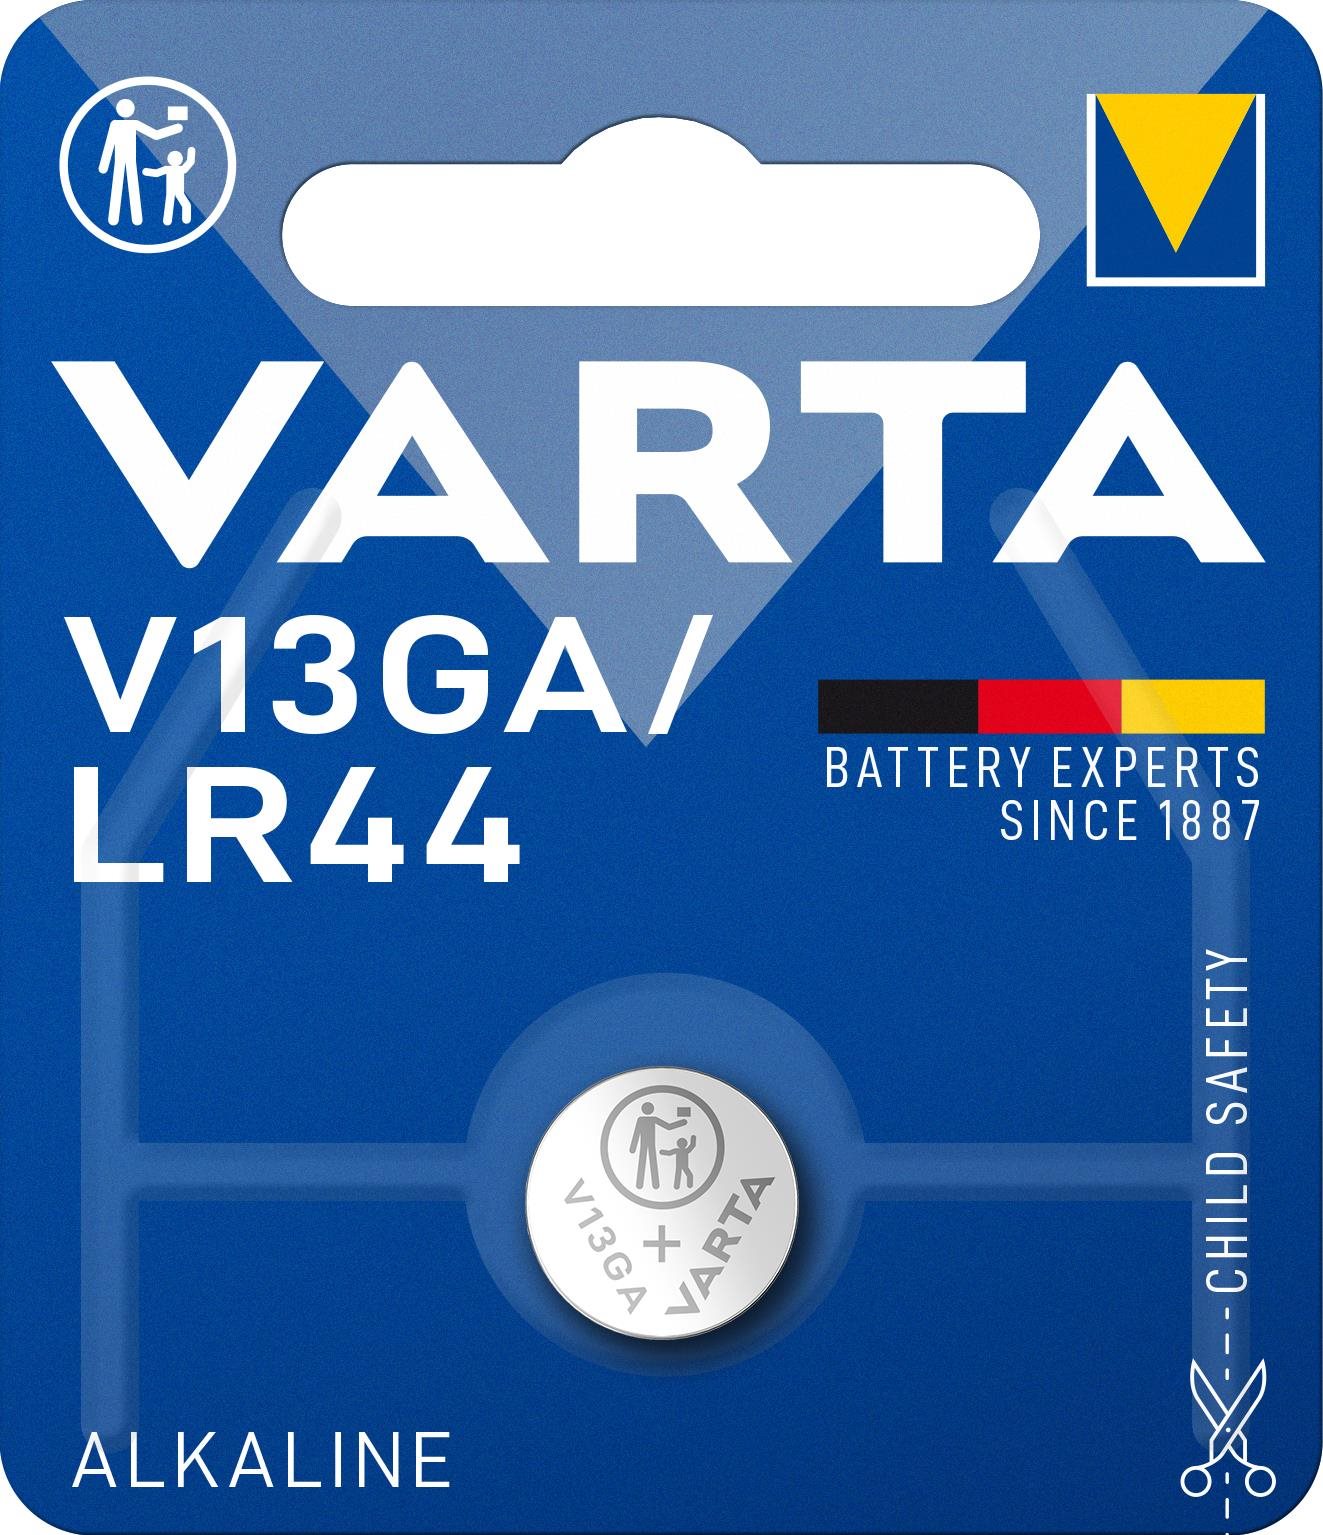 Varta LR44 (V13GA)